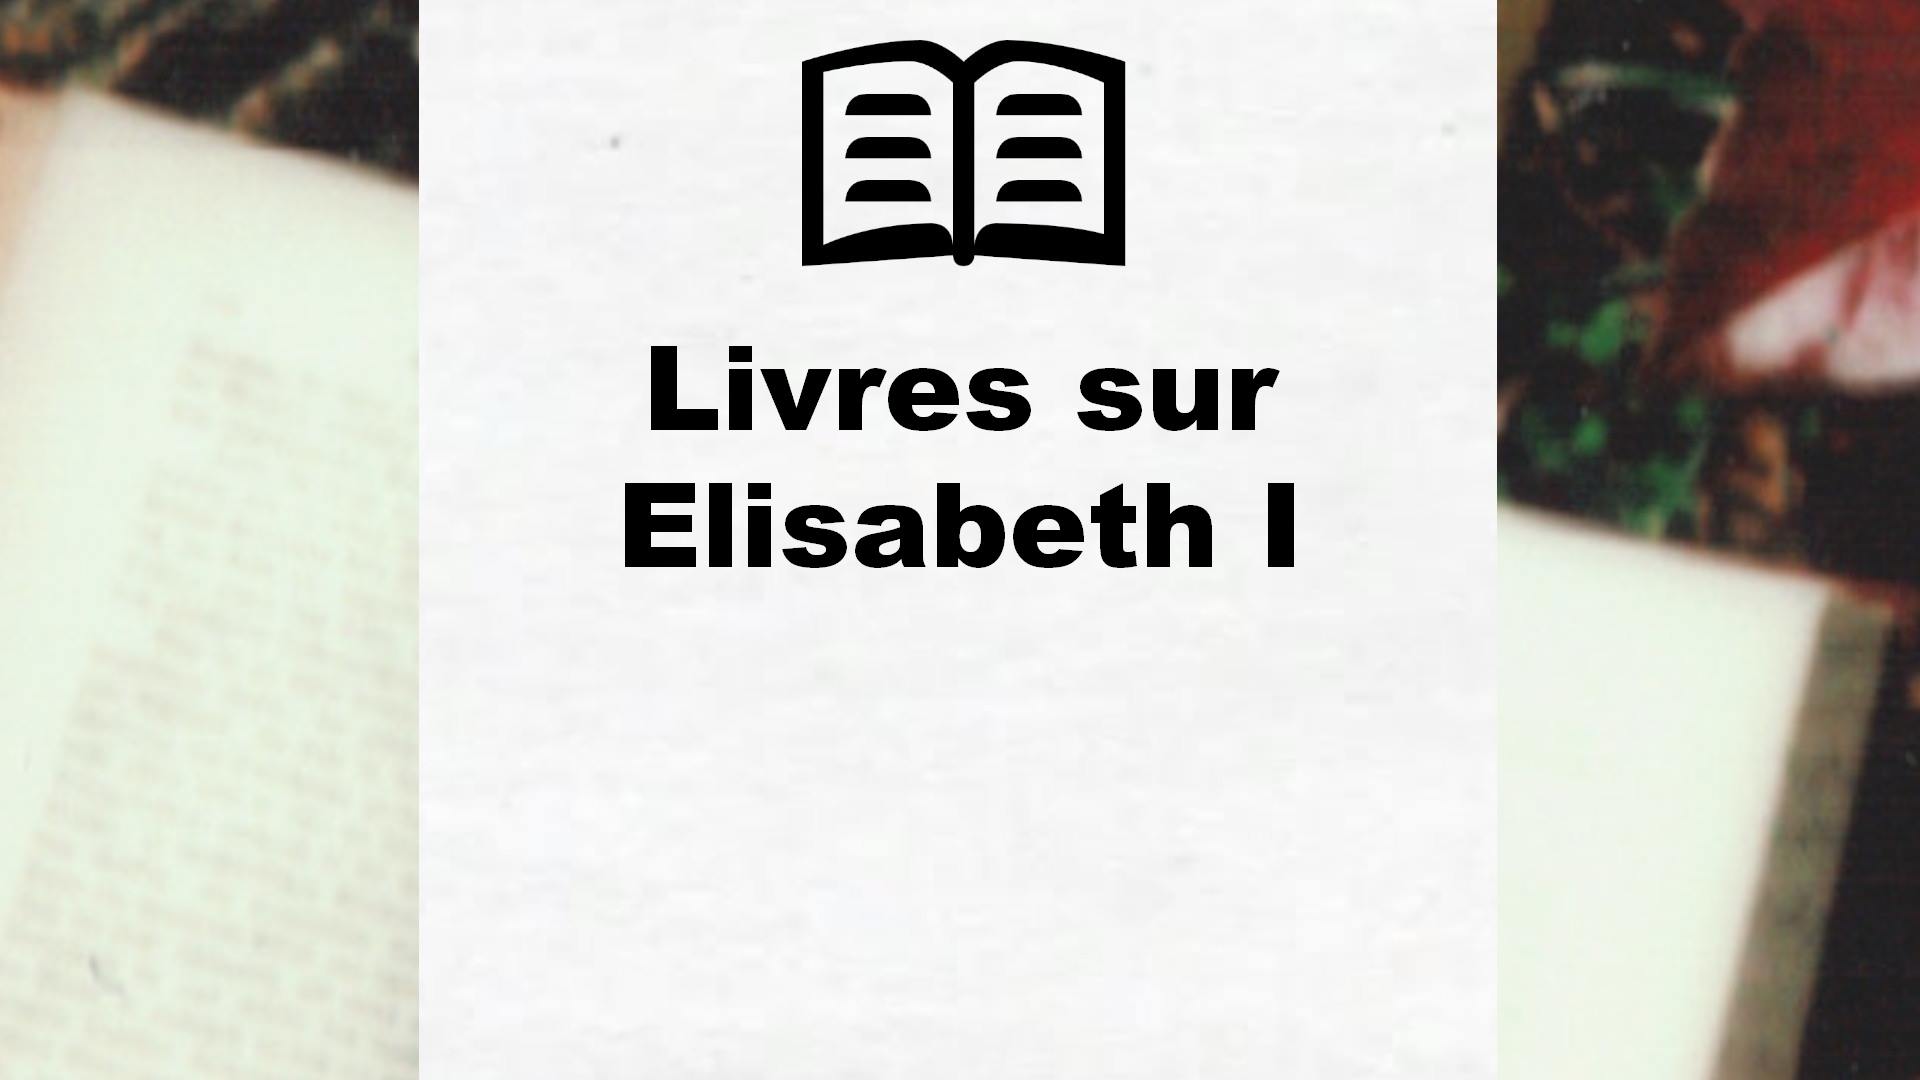 Livres sur Elisabeth I